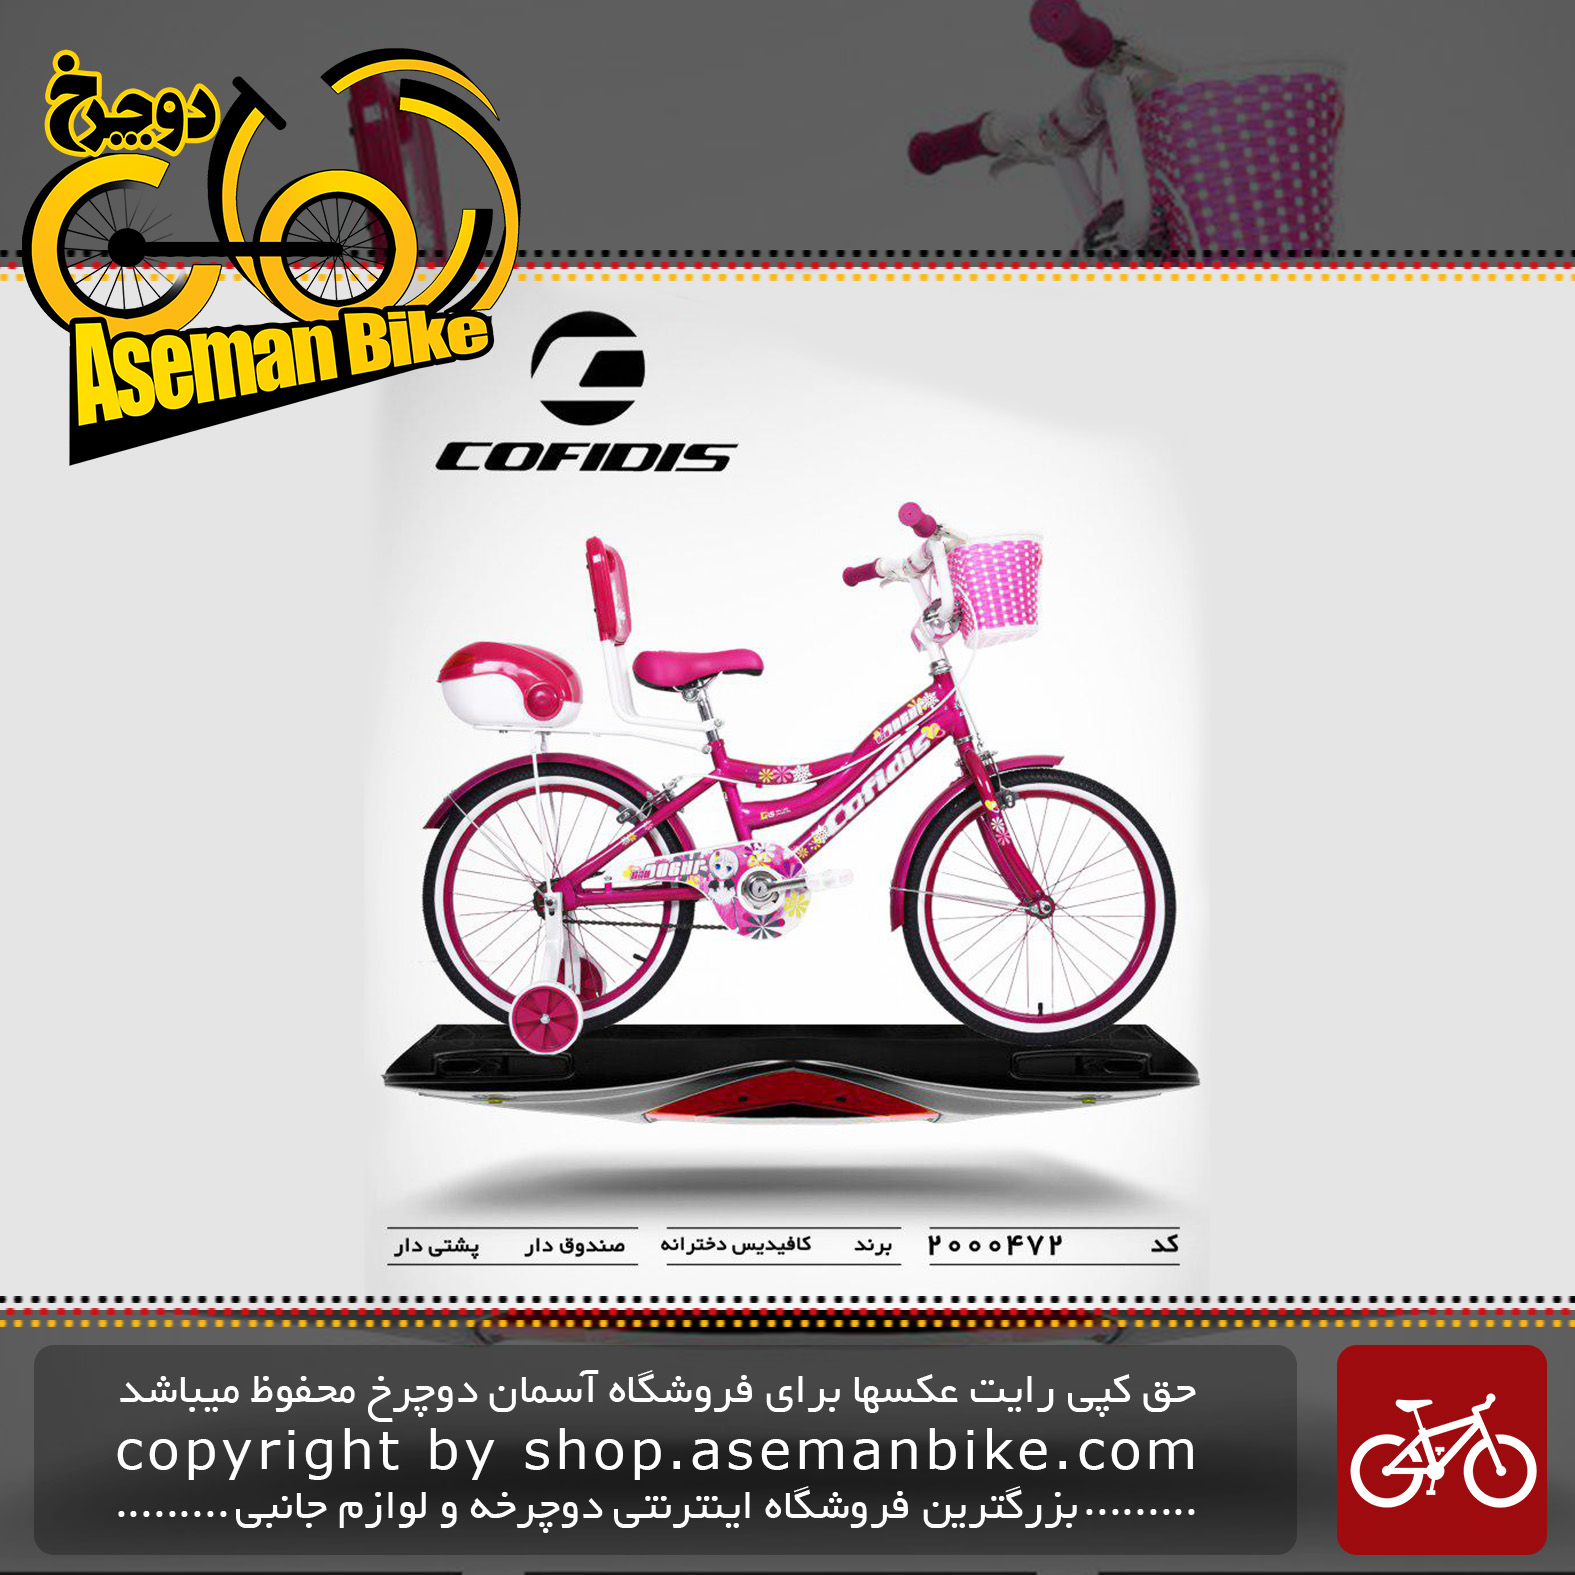 دوچرخه کافیدیس تایوان دخترانه صندوق و سبد دار مدل 472 سایز 20 COFIDIS Bicycle 472 Size 20 2019